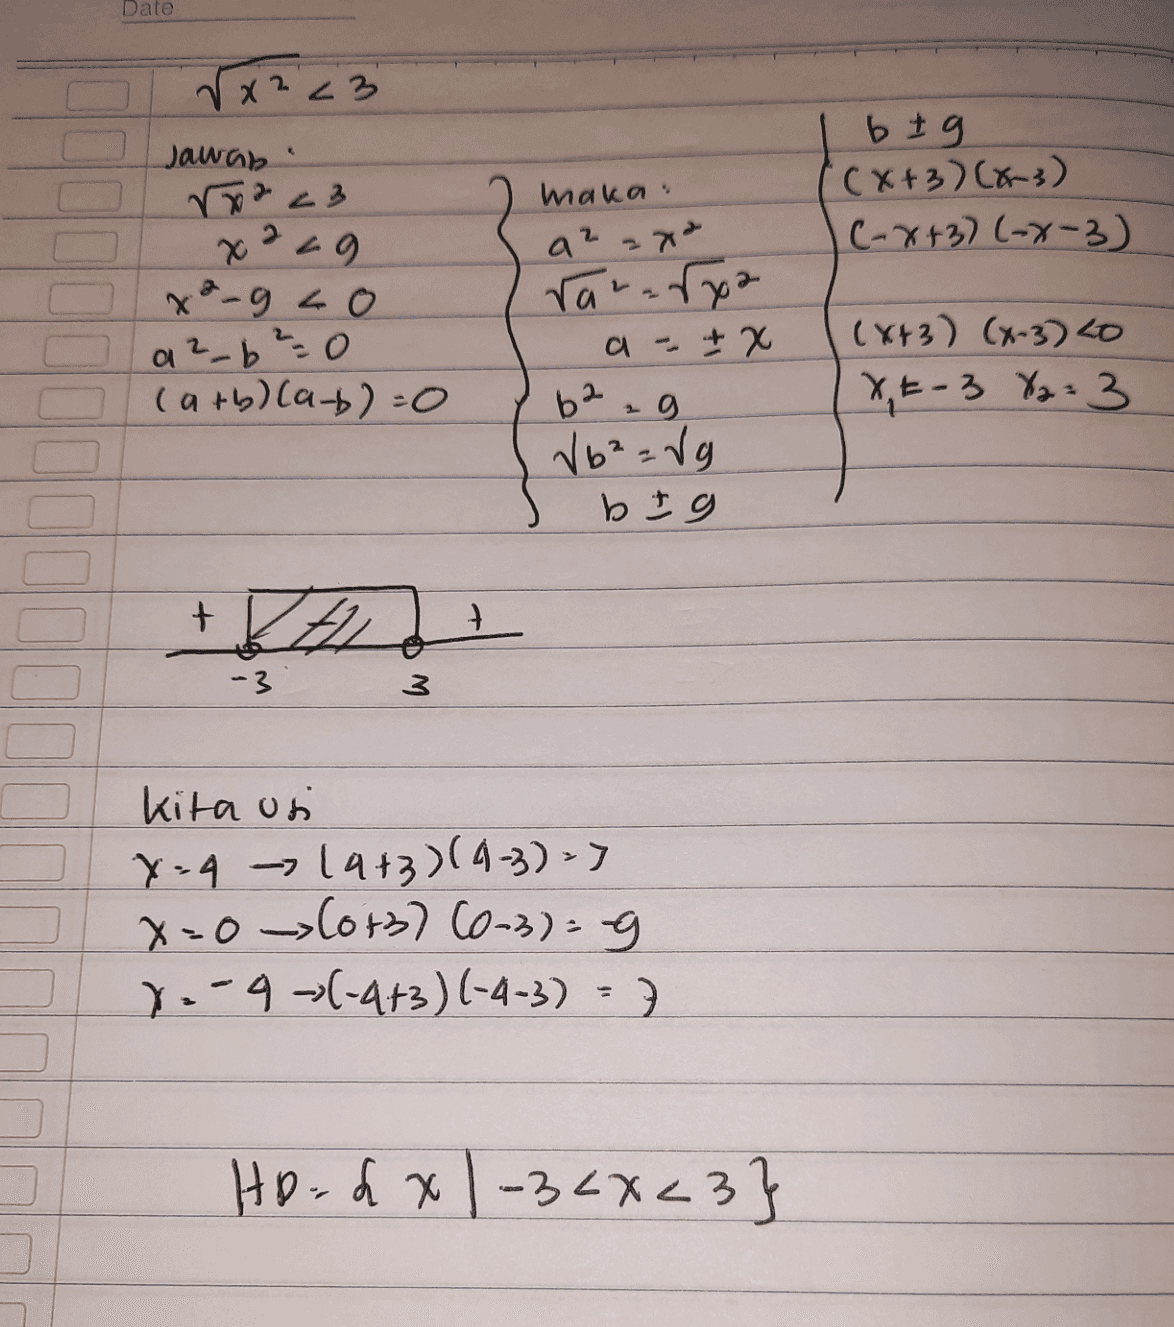 Date rx223 Jawab 23 x 229 x ²-gco O a?_b² = 0 0 (arb) (ab)=0 b tg '(x+3)(x-3) C-x+3)(-x-3) maka a? rararxa + x a. (x+3) (x-3) 20 XE-3 %2 = 3 62.g V6²=Vg b = 9 -3 Kita usi X=4 - 14+3)(4-3) => x=0 (0+3) (6-3)= 9 1.-4-(-4+3) (-4-3) = 7 Hoodx1-34X<3} 